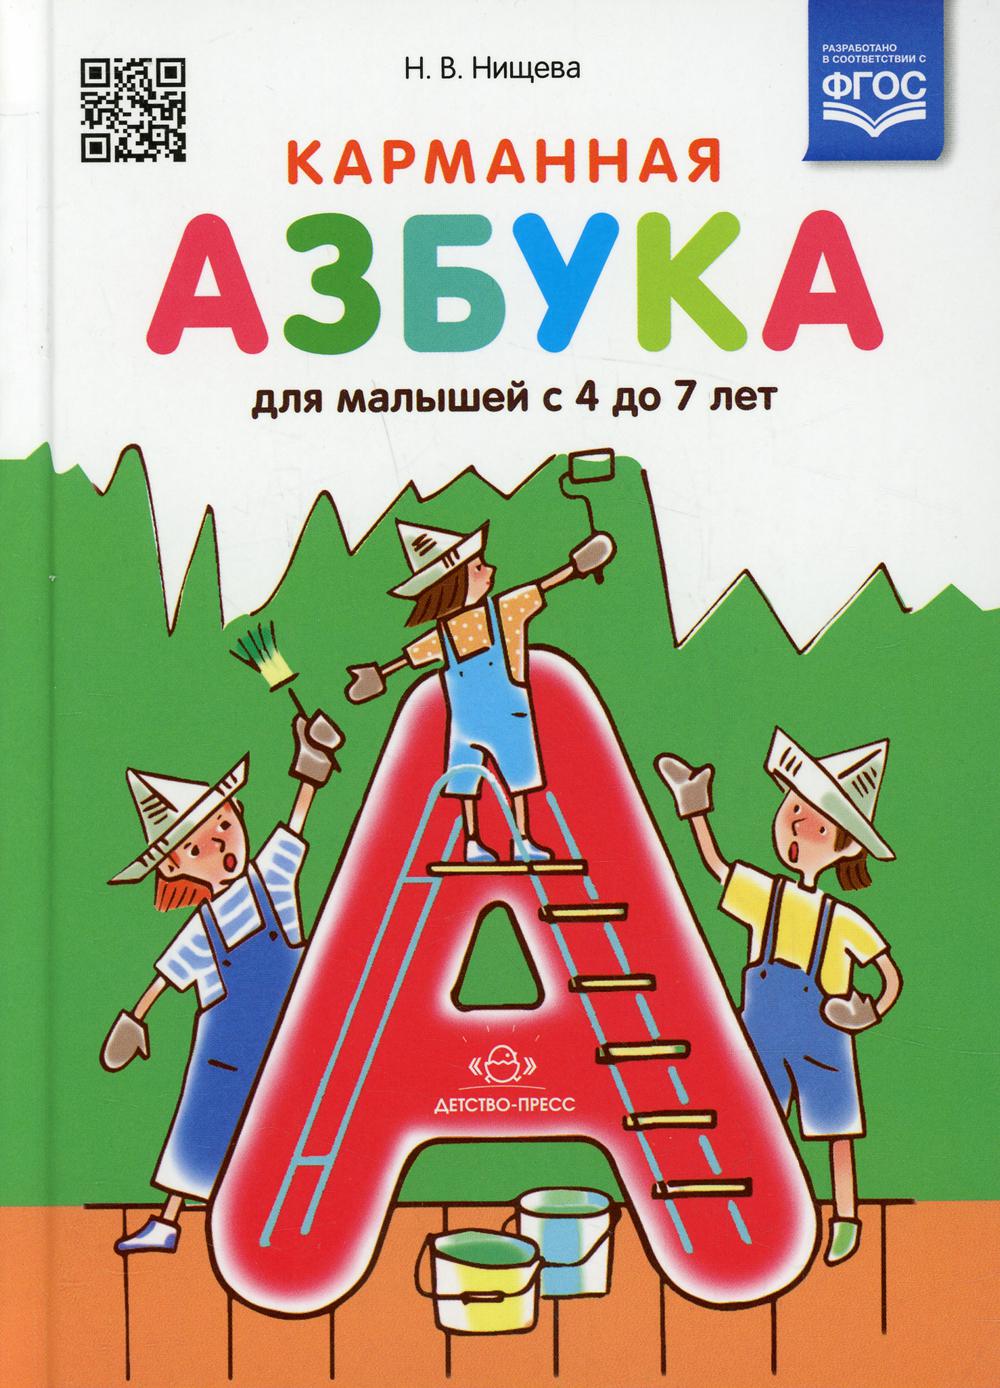 фото Книга карманная азбука для малышей с 4 до 7 лет детство-пресс